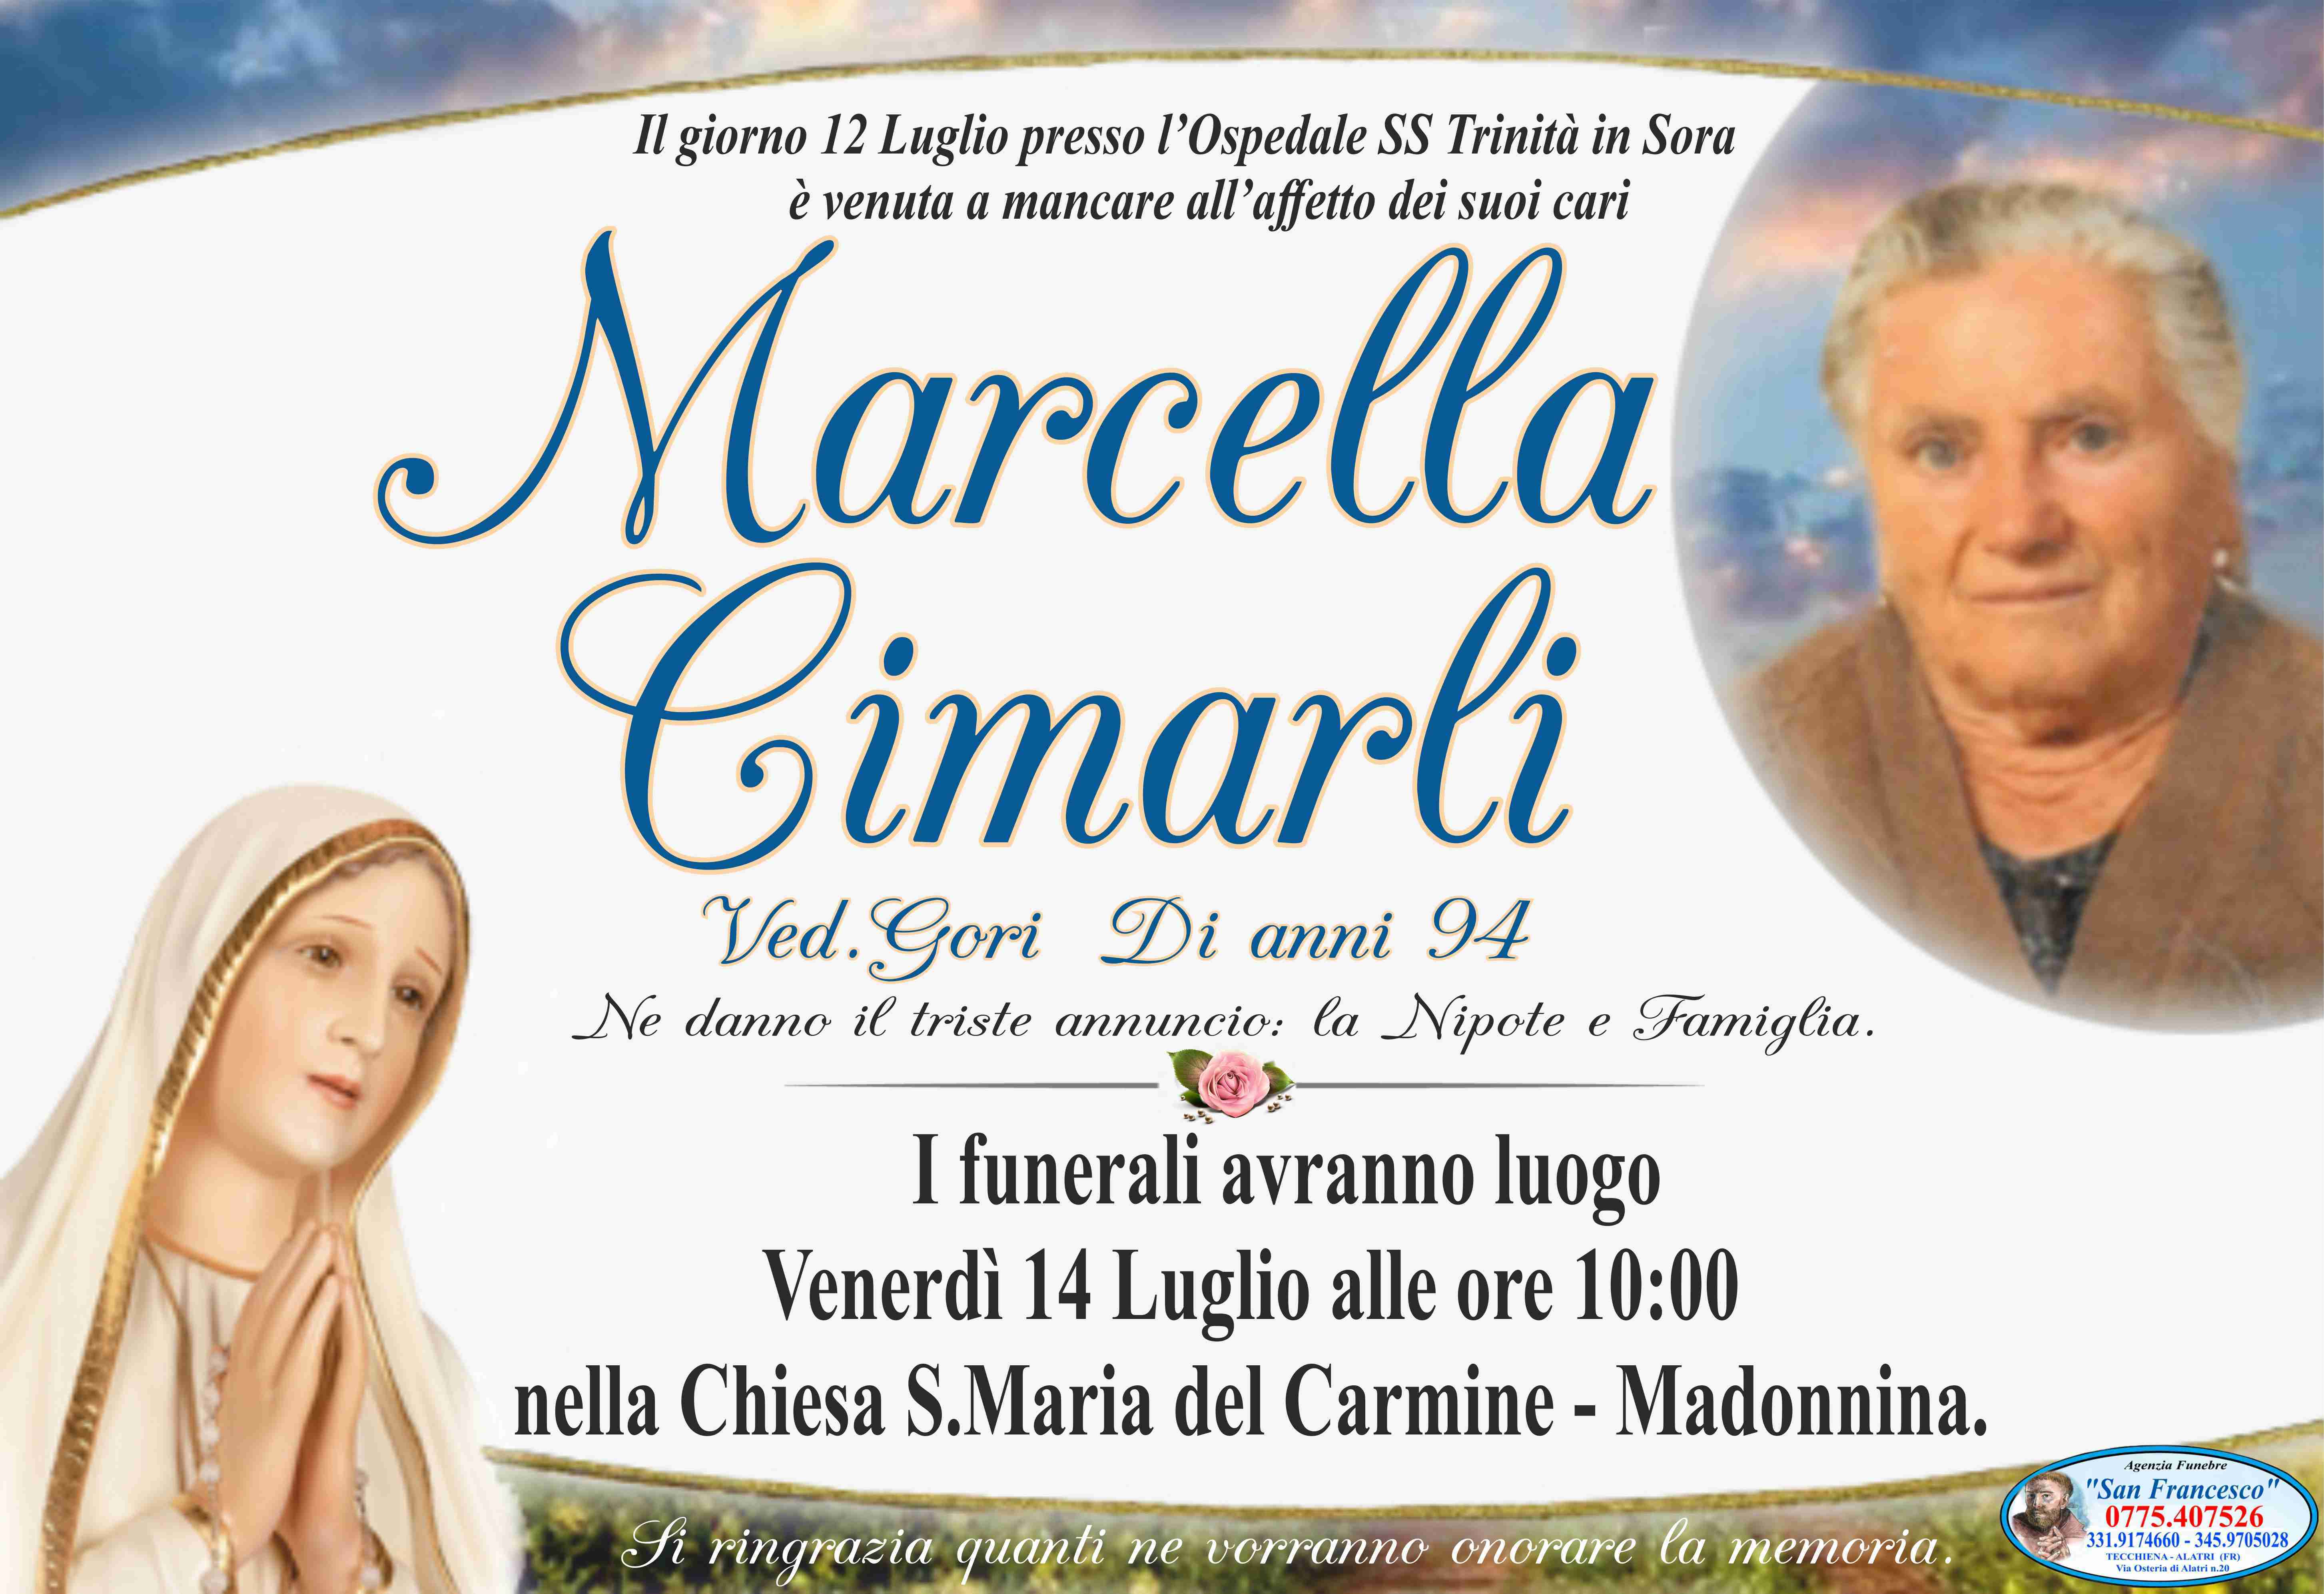 Marcella Cimarli